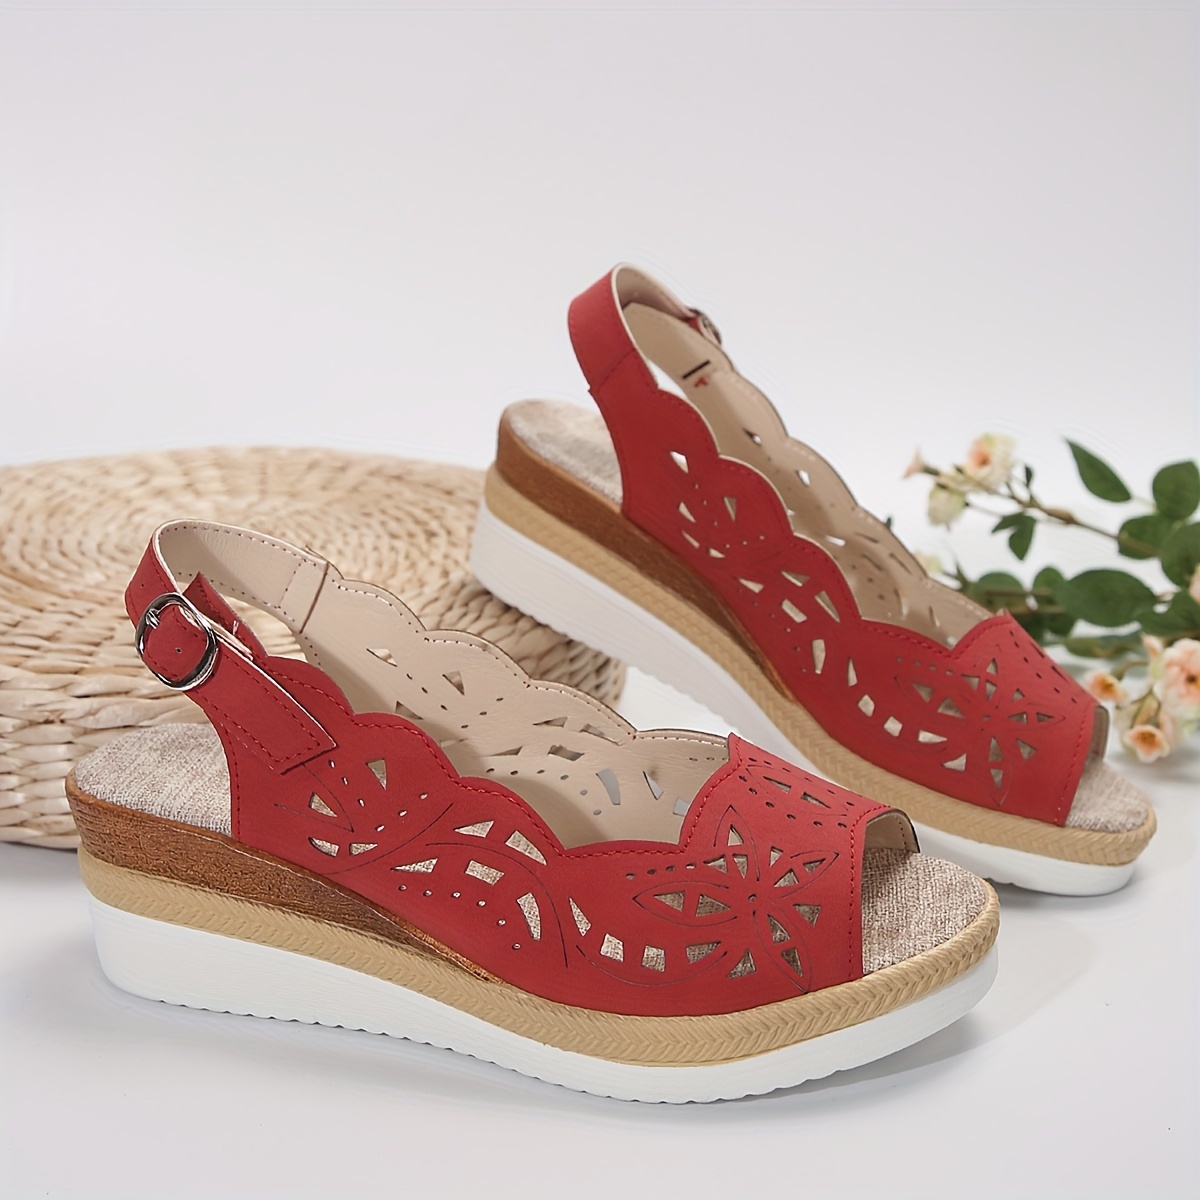 floral hollow sandals women s ankle buckle strap platform detalles 8